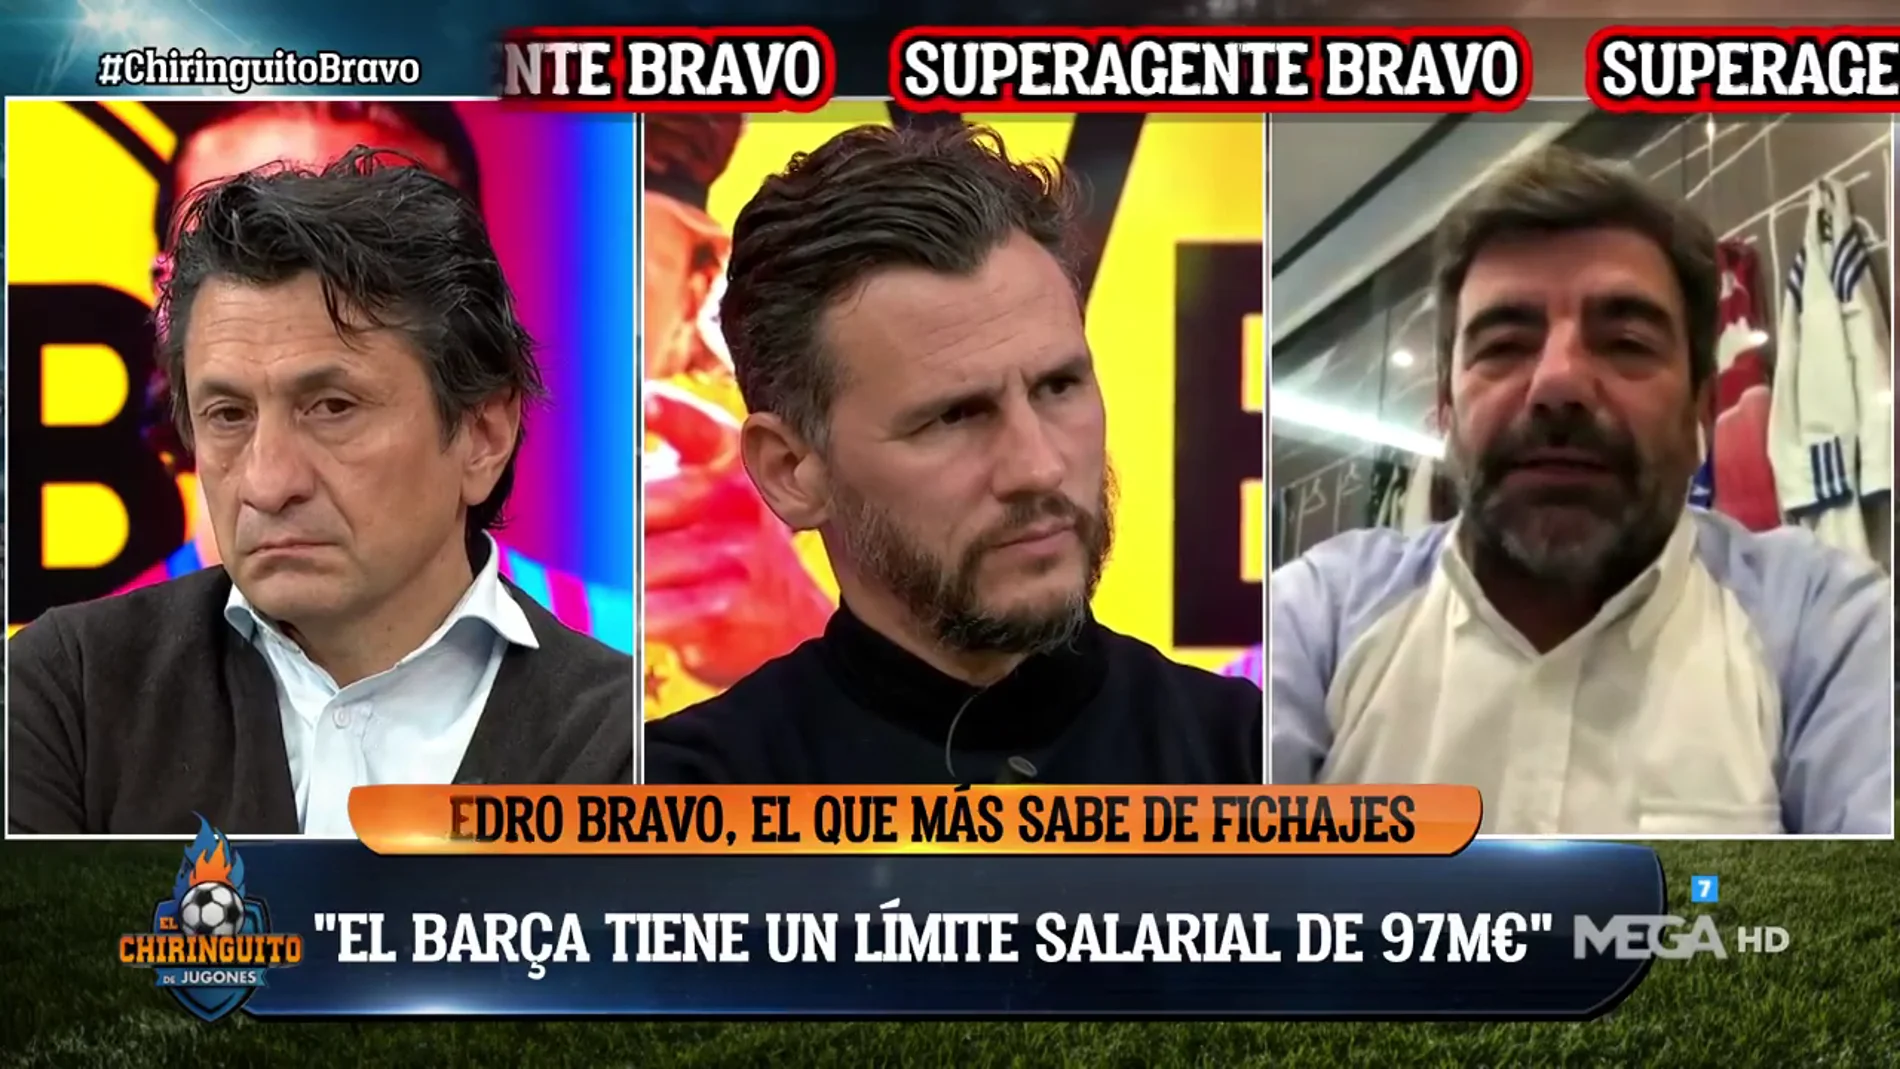 Pedro Bravo: "El Barça tiene un límite salarial de 97 millones"